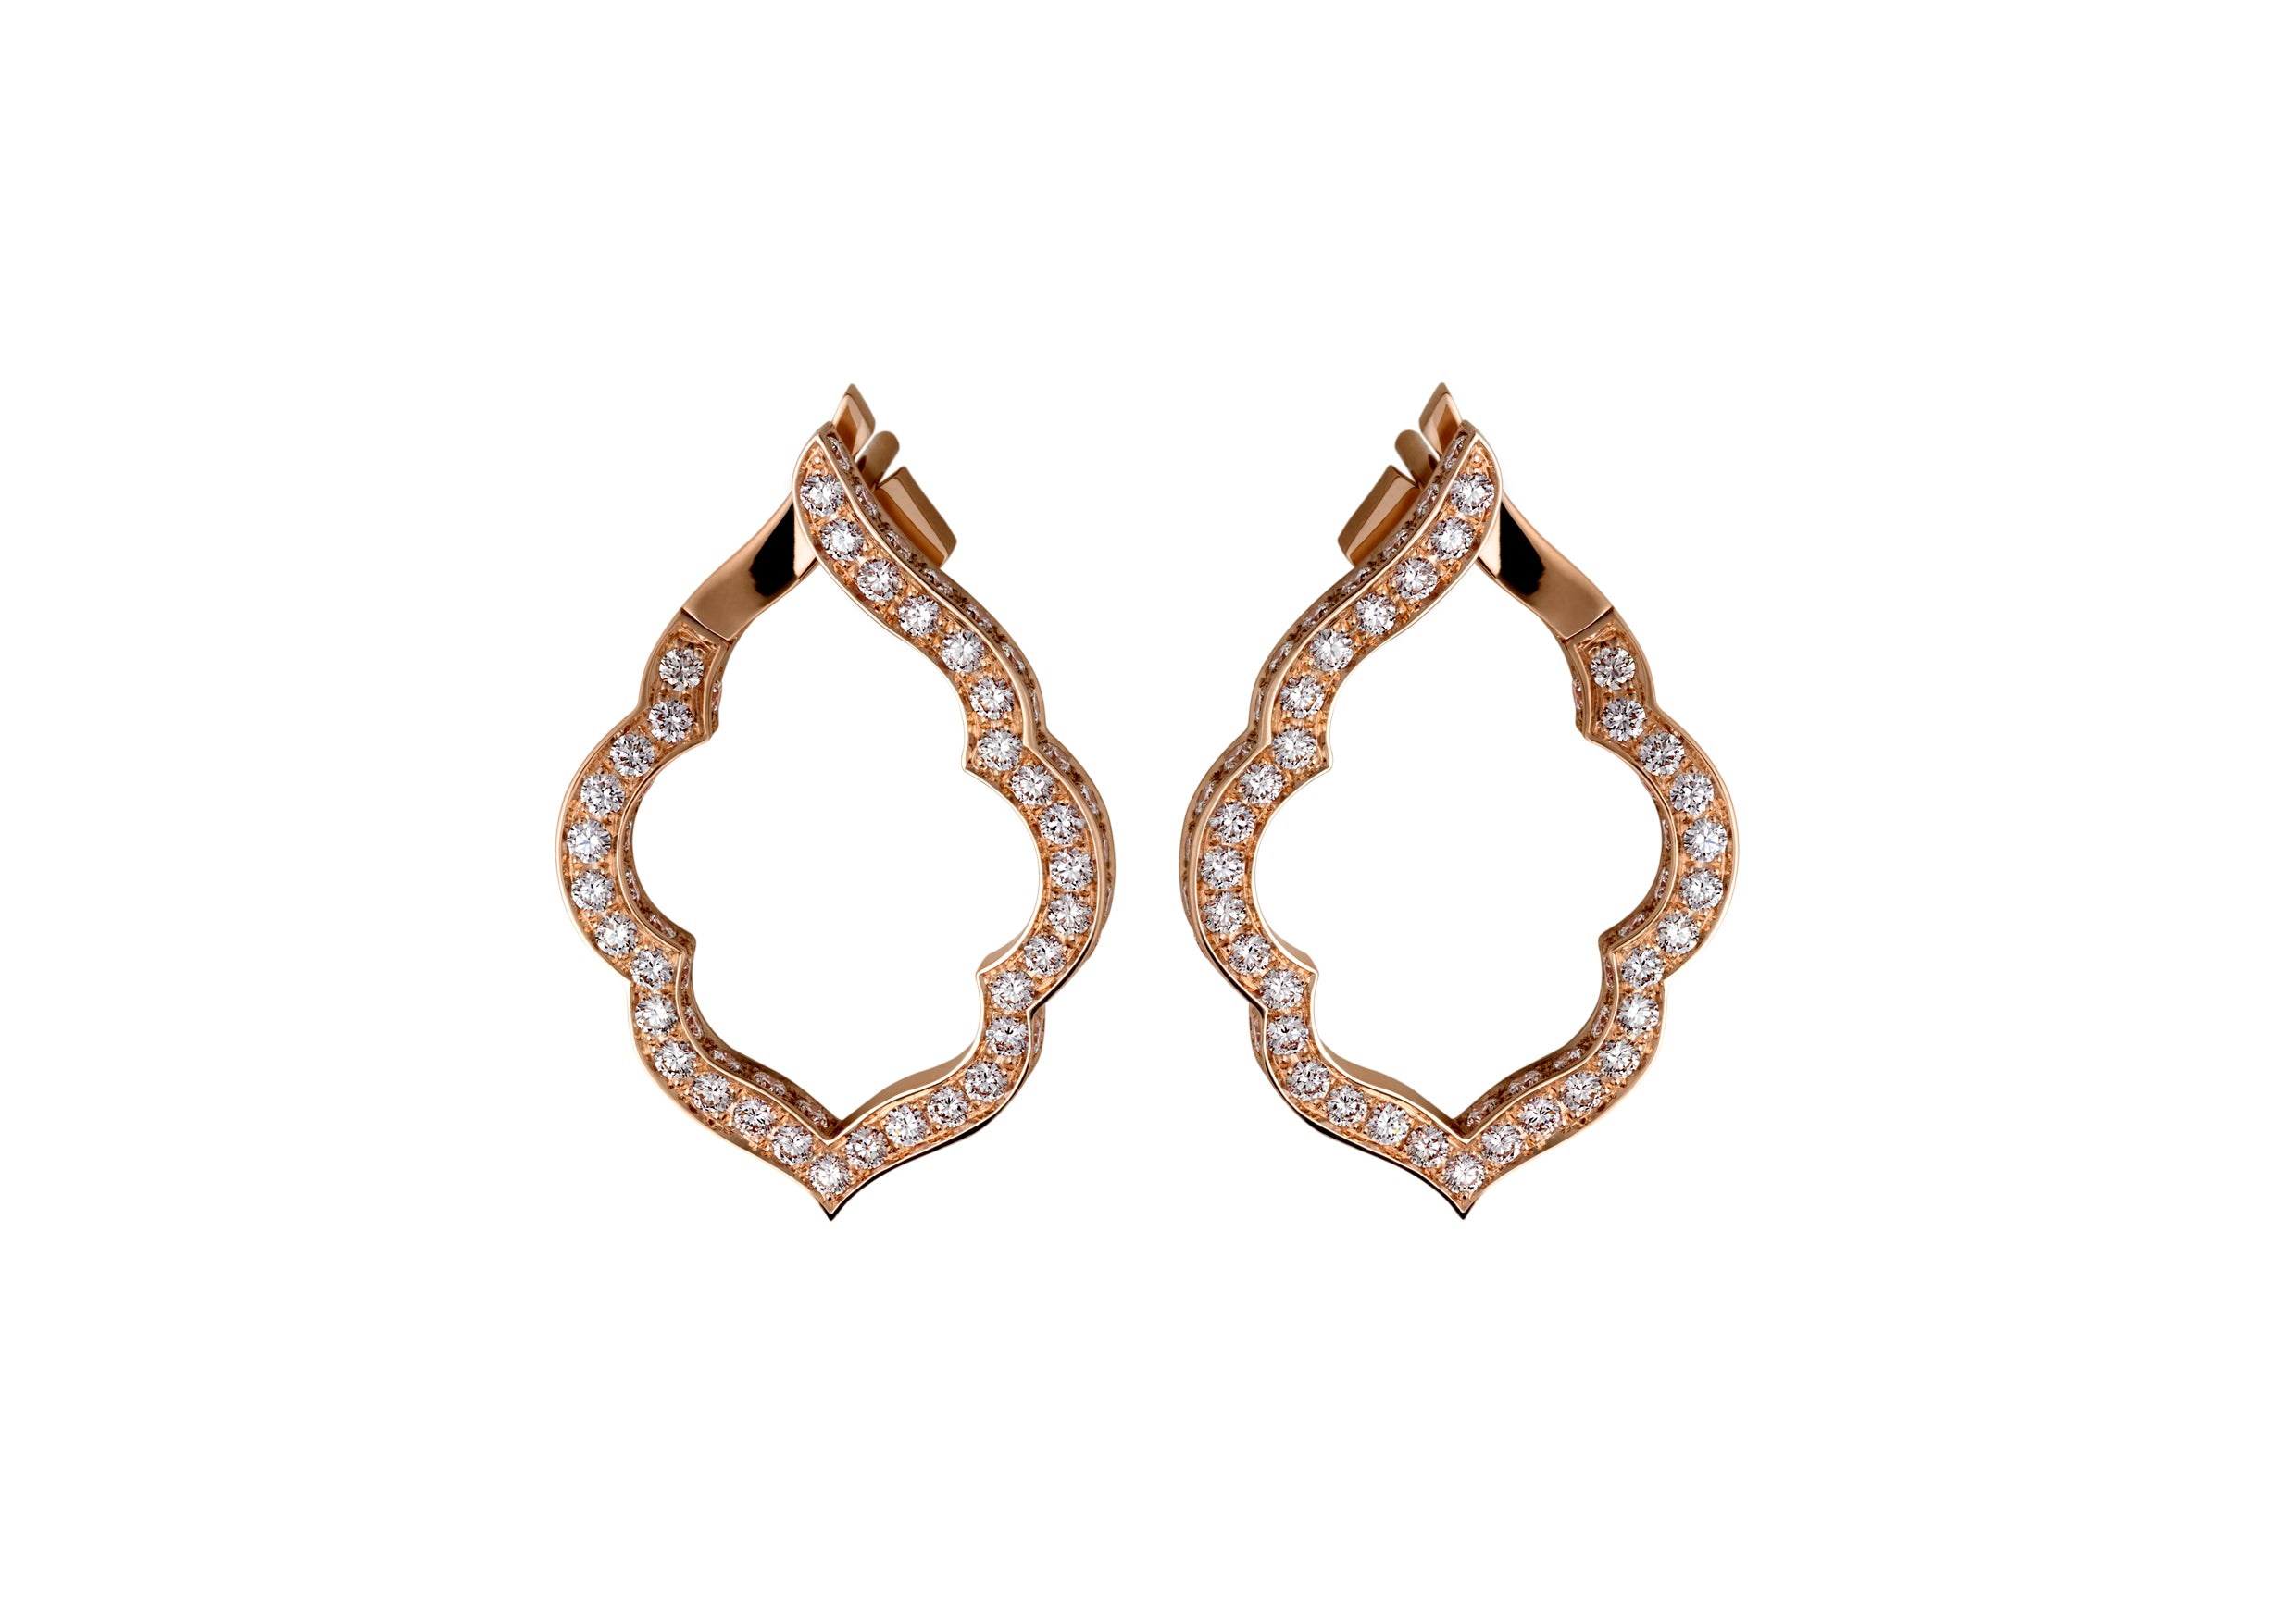 The Aura Diamond Earrings in Rose Gold